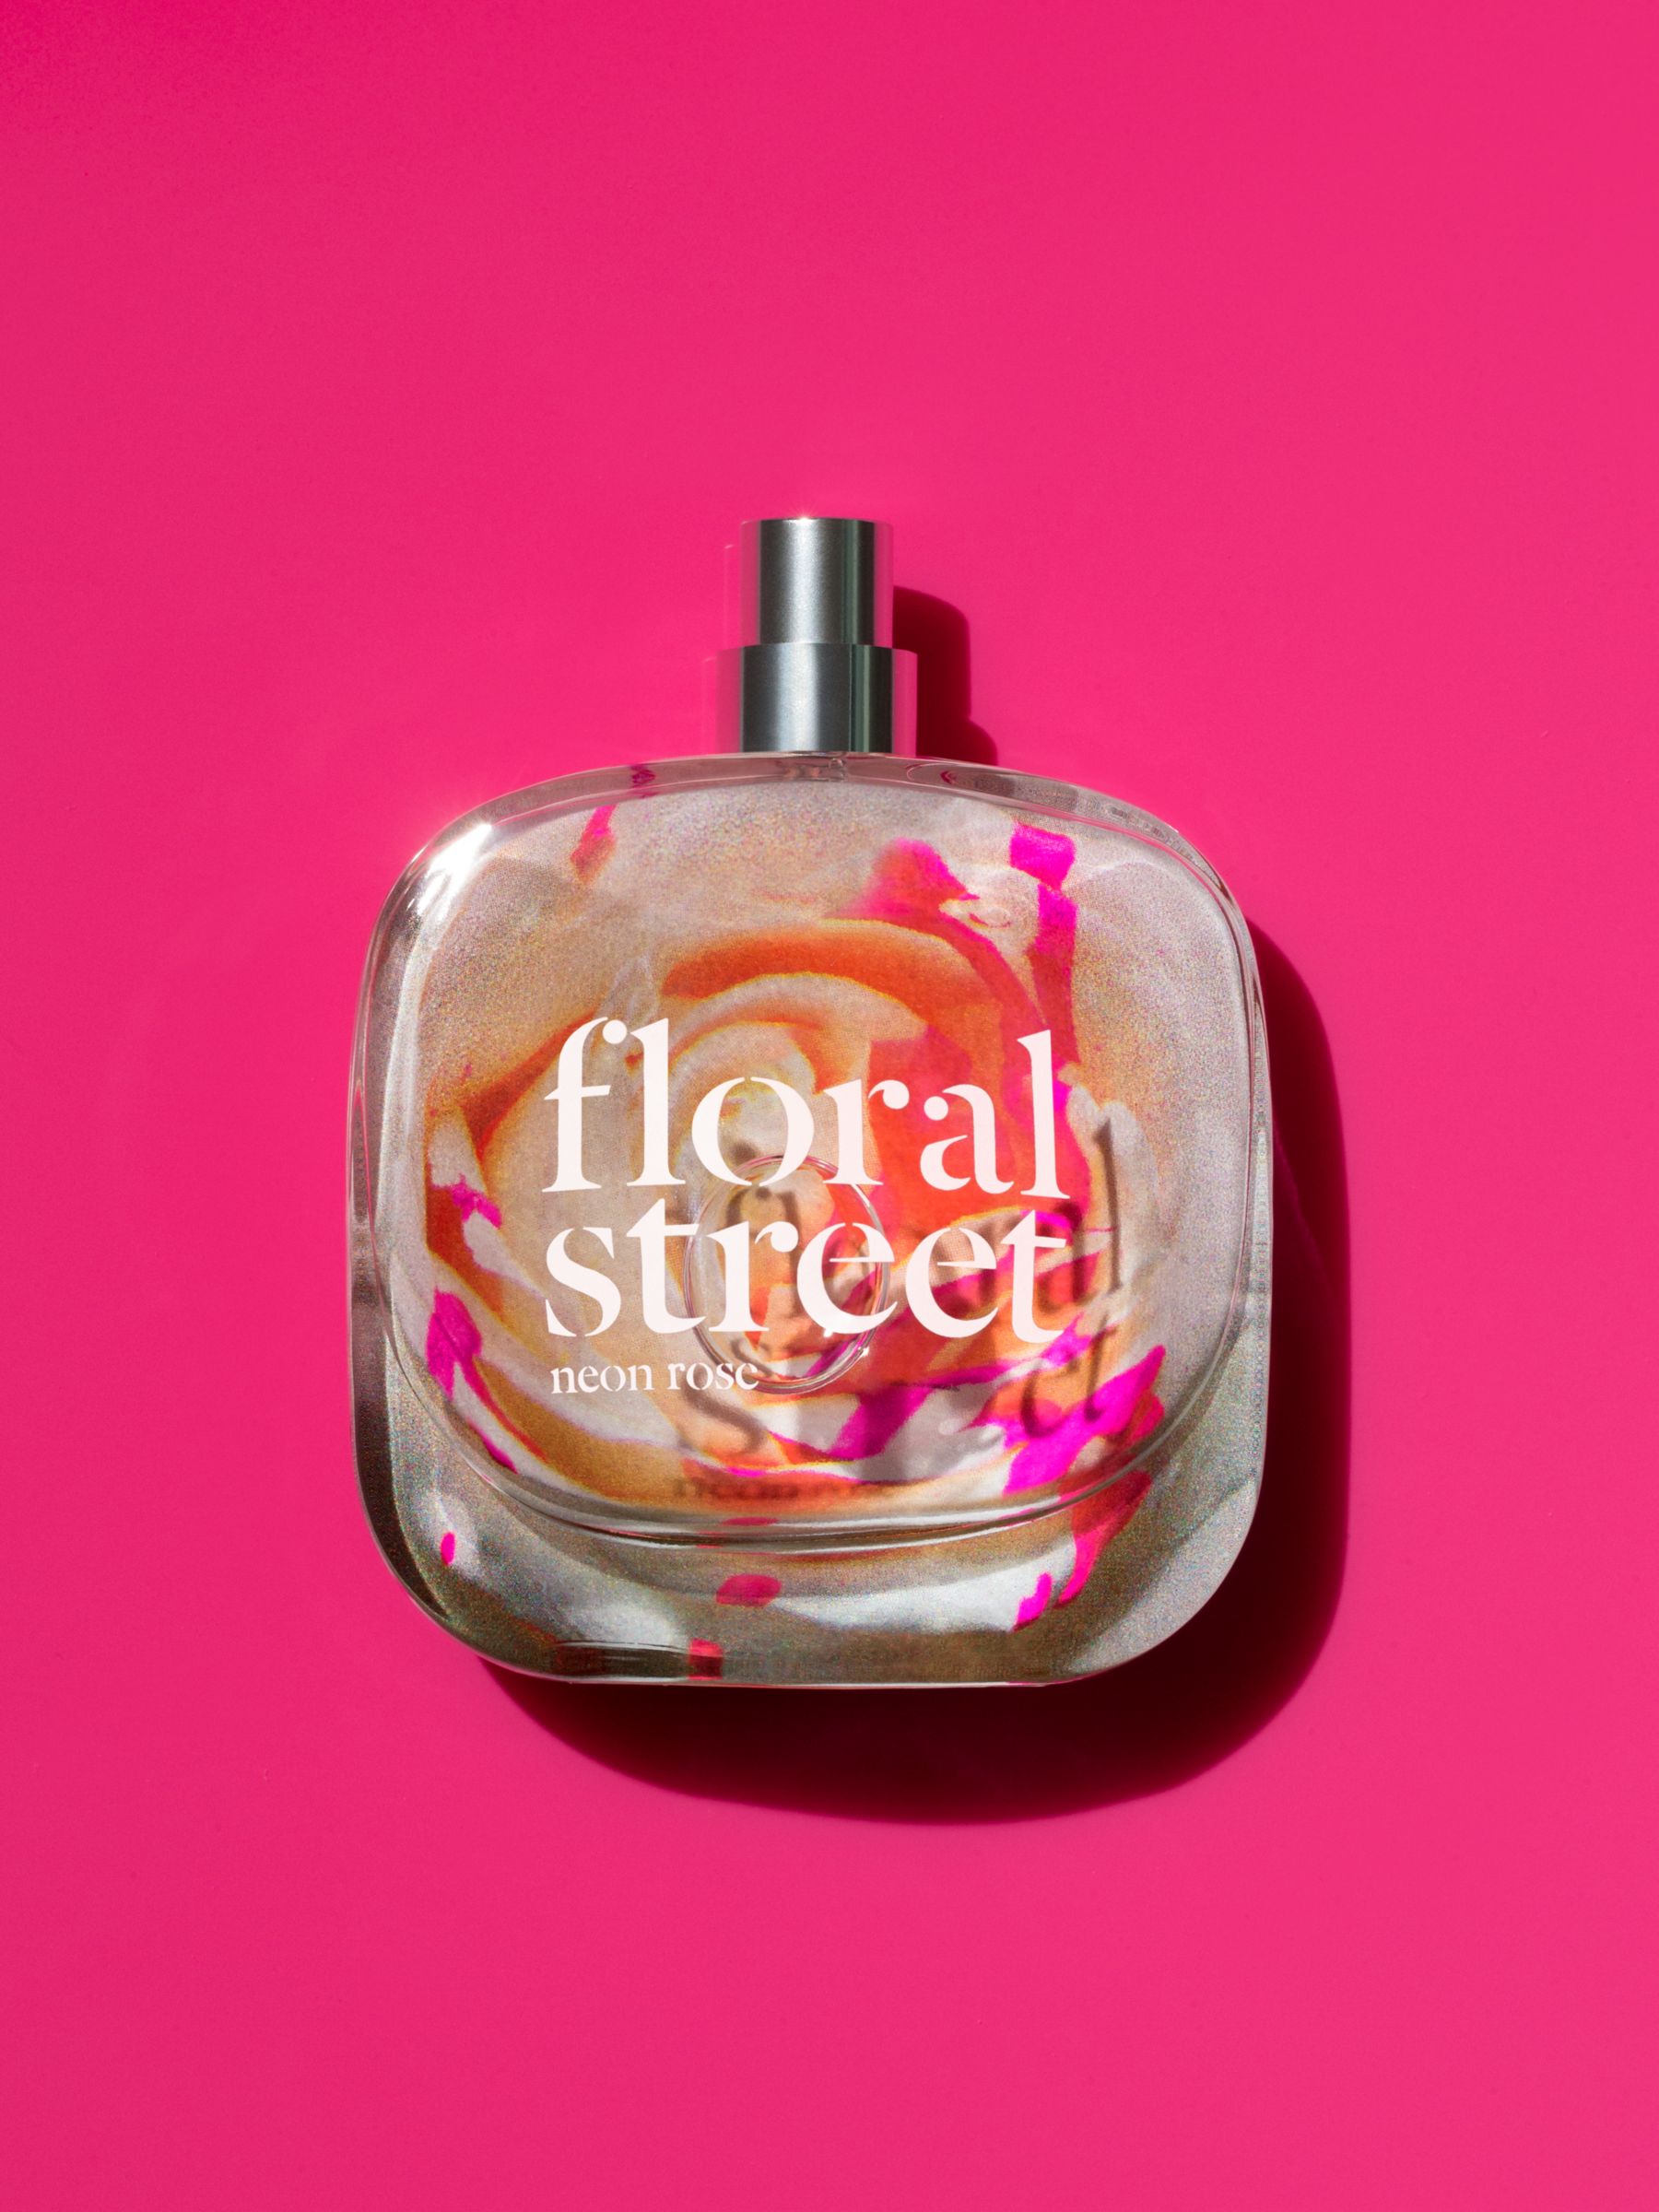 Floral Street Neon Rose Eau de Parfum, 100ml 4